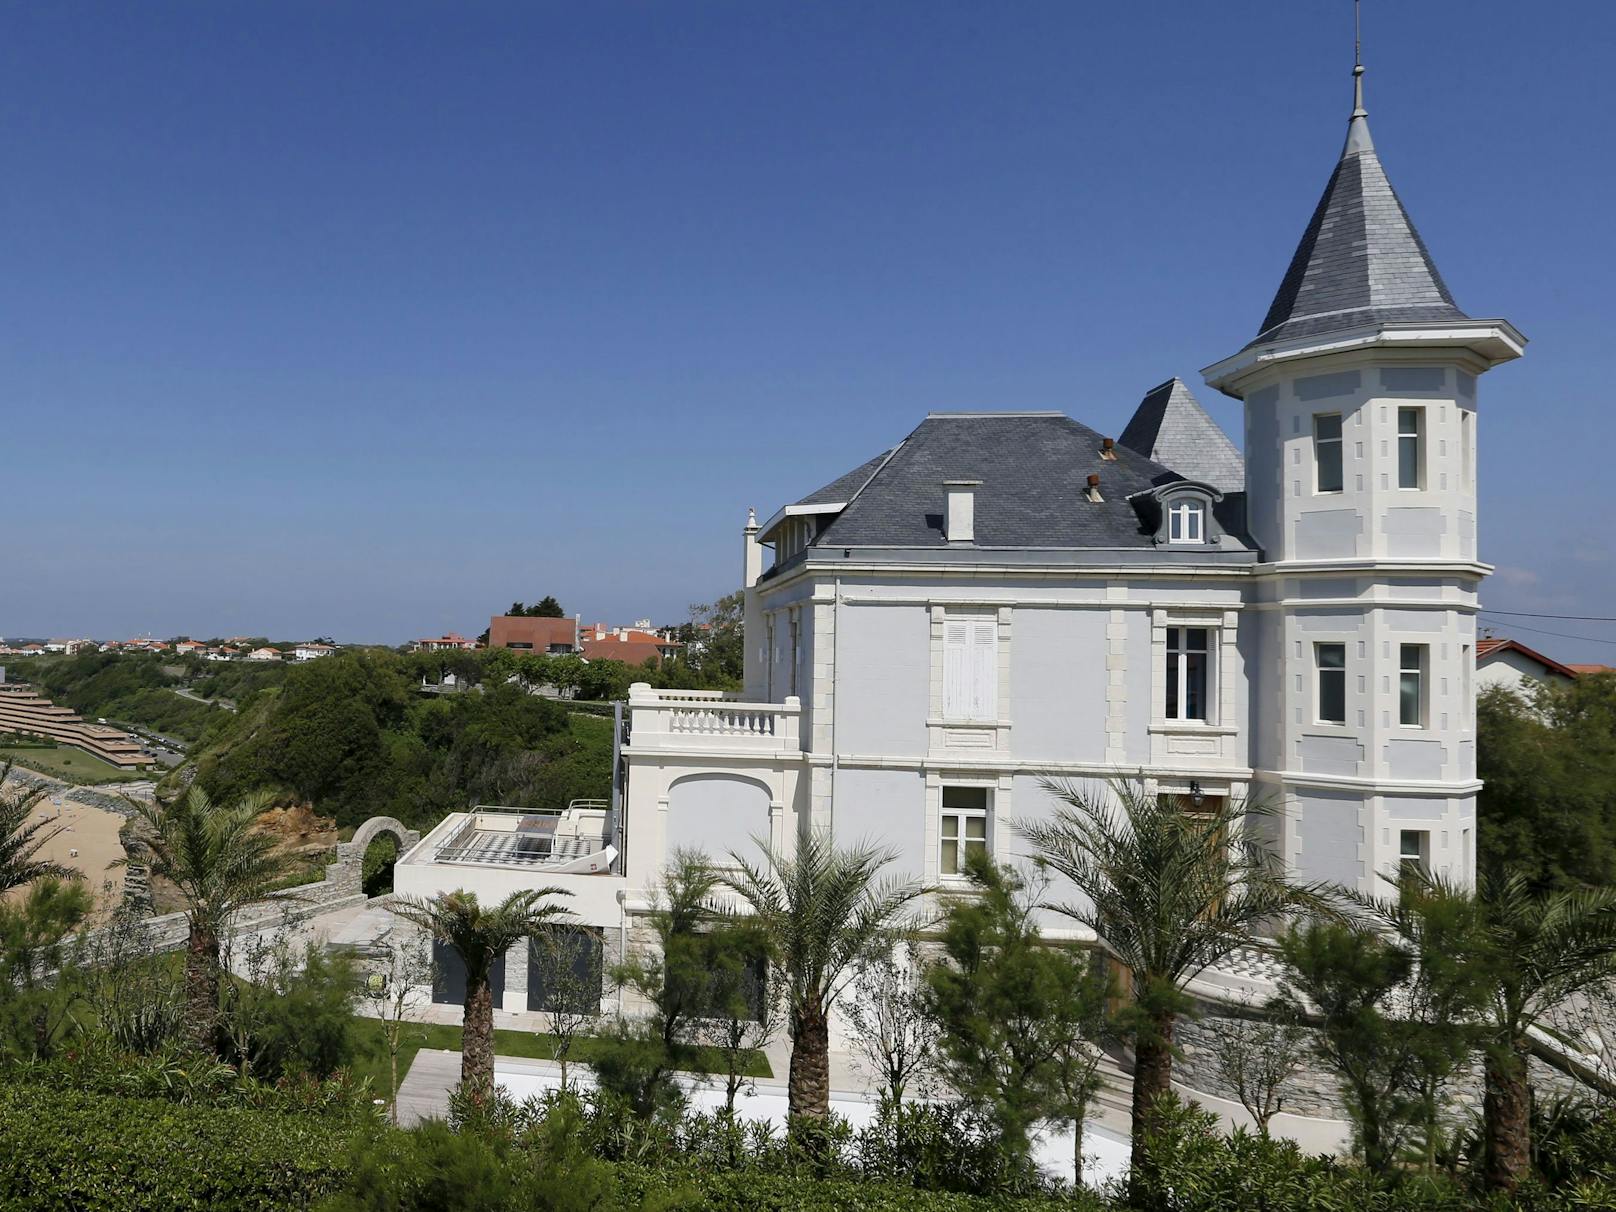 Die Millionen-Villa mit dem sagenhaften Atlantik-Blick gehört dem russischen Oligarchen Kirill Schamalow